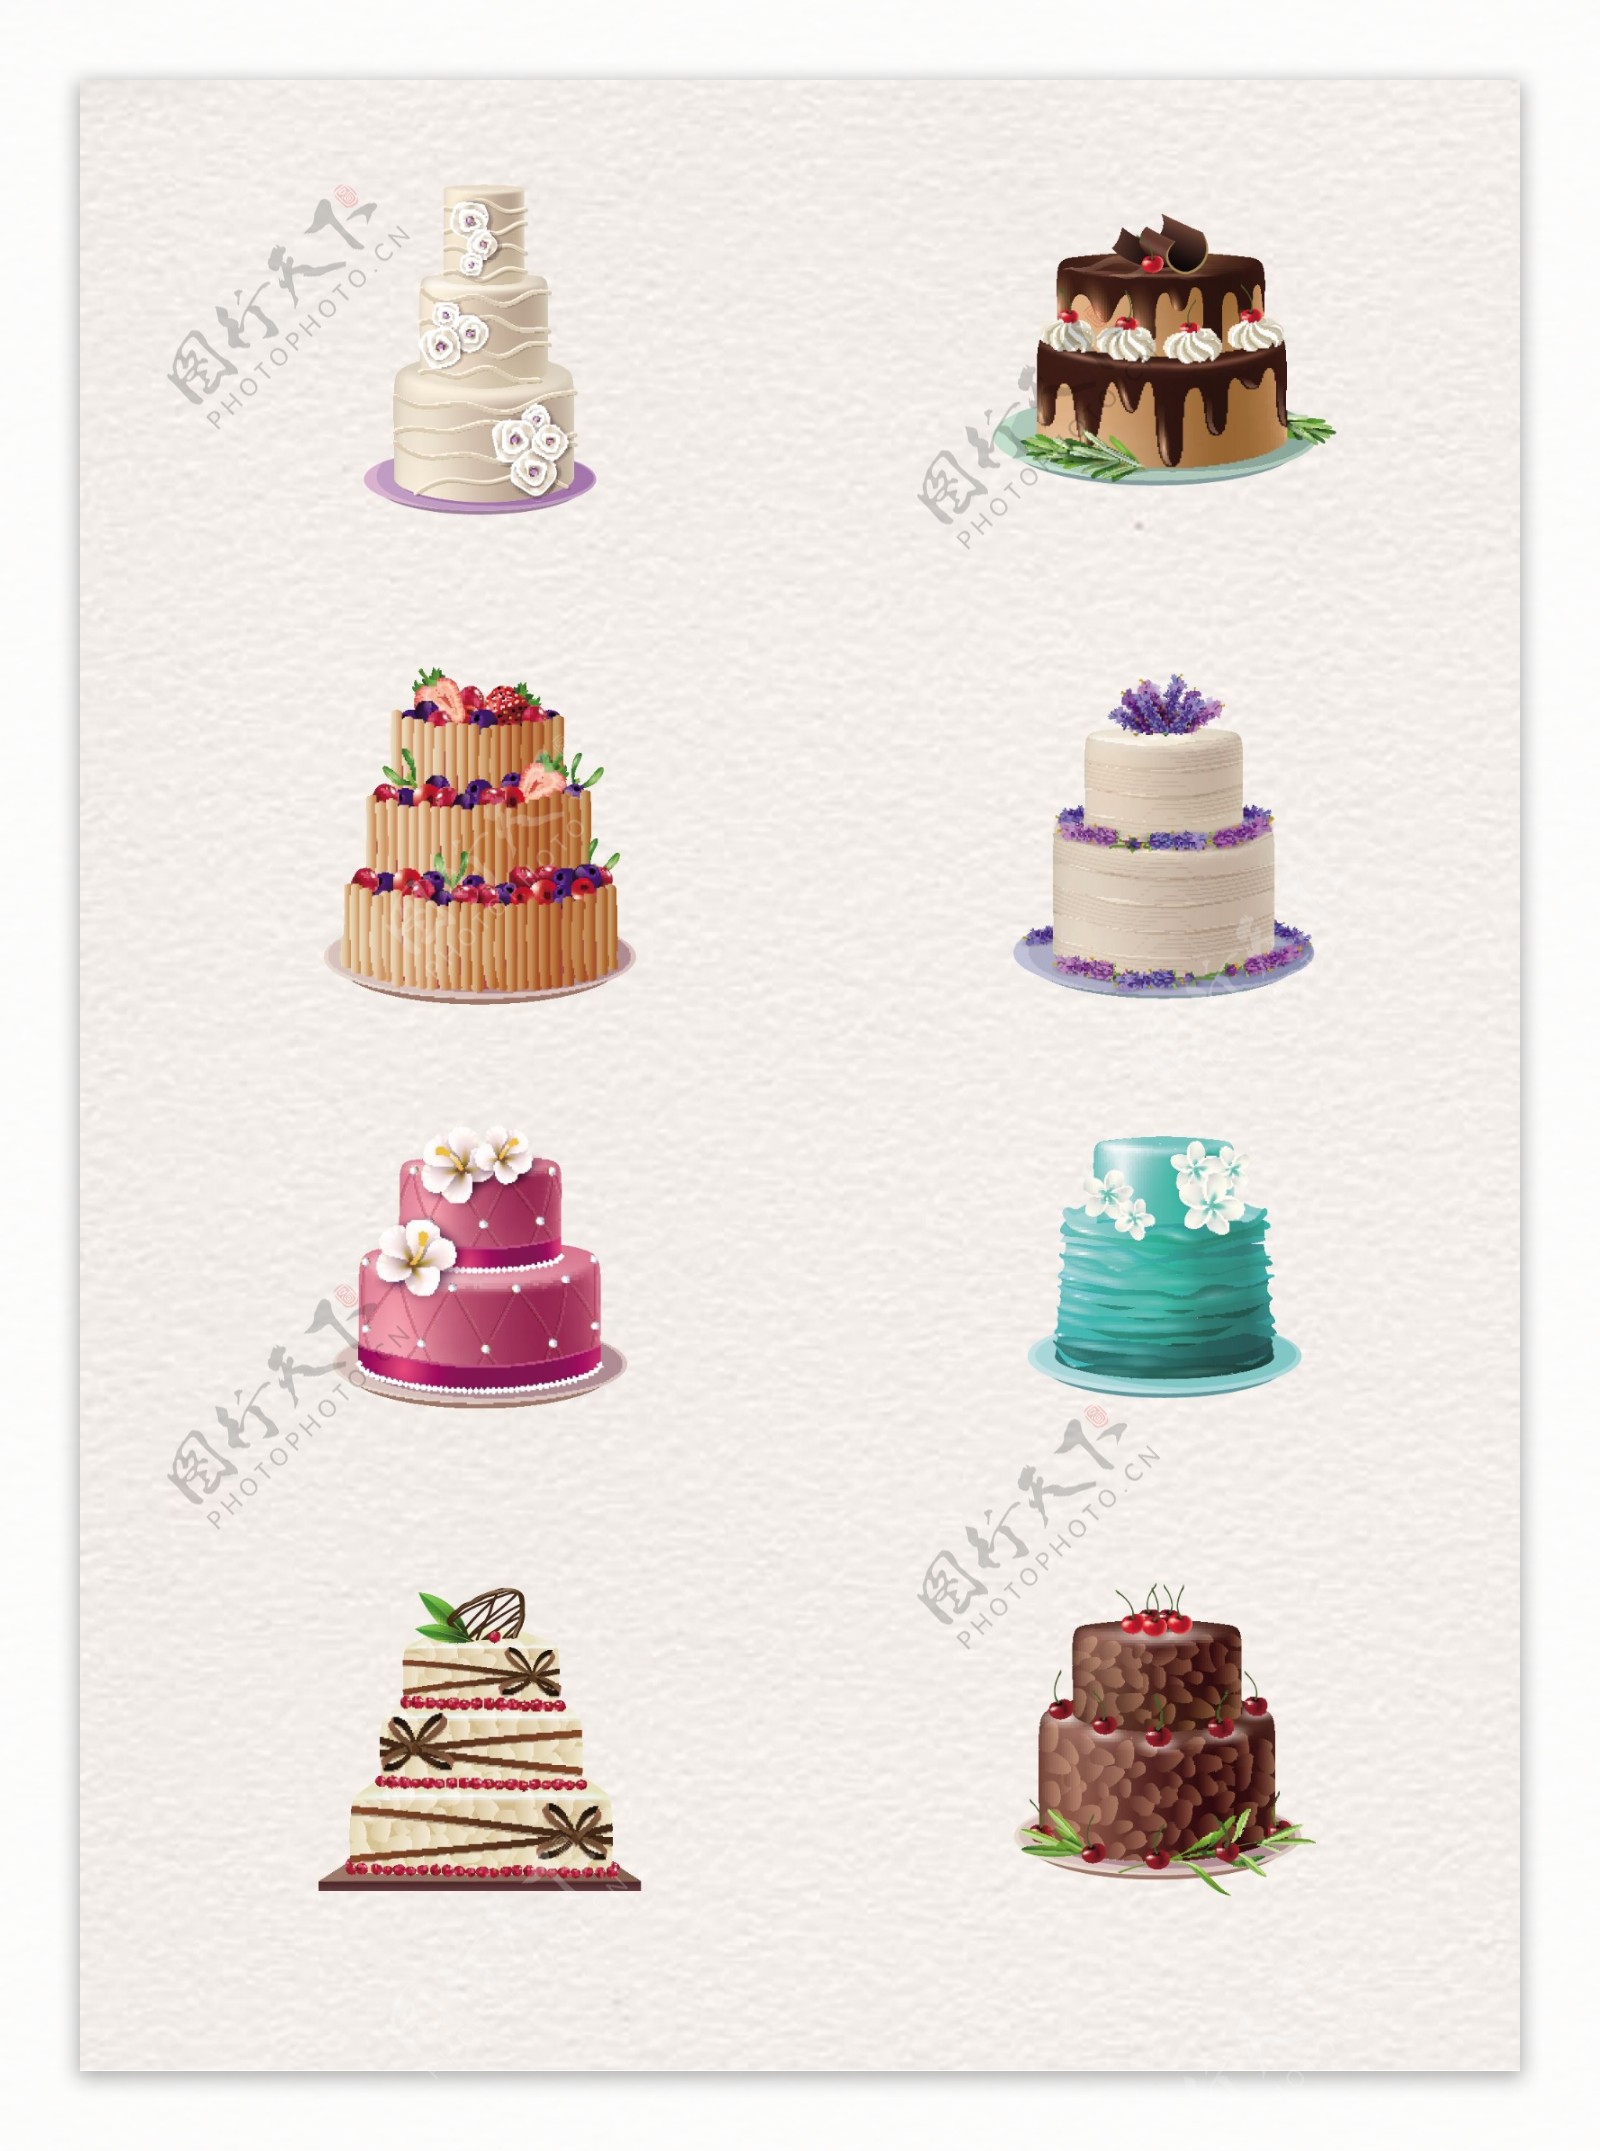 彩绘8组蛋糕设计